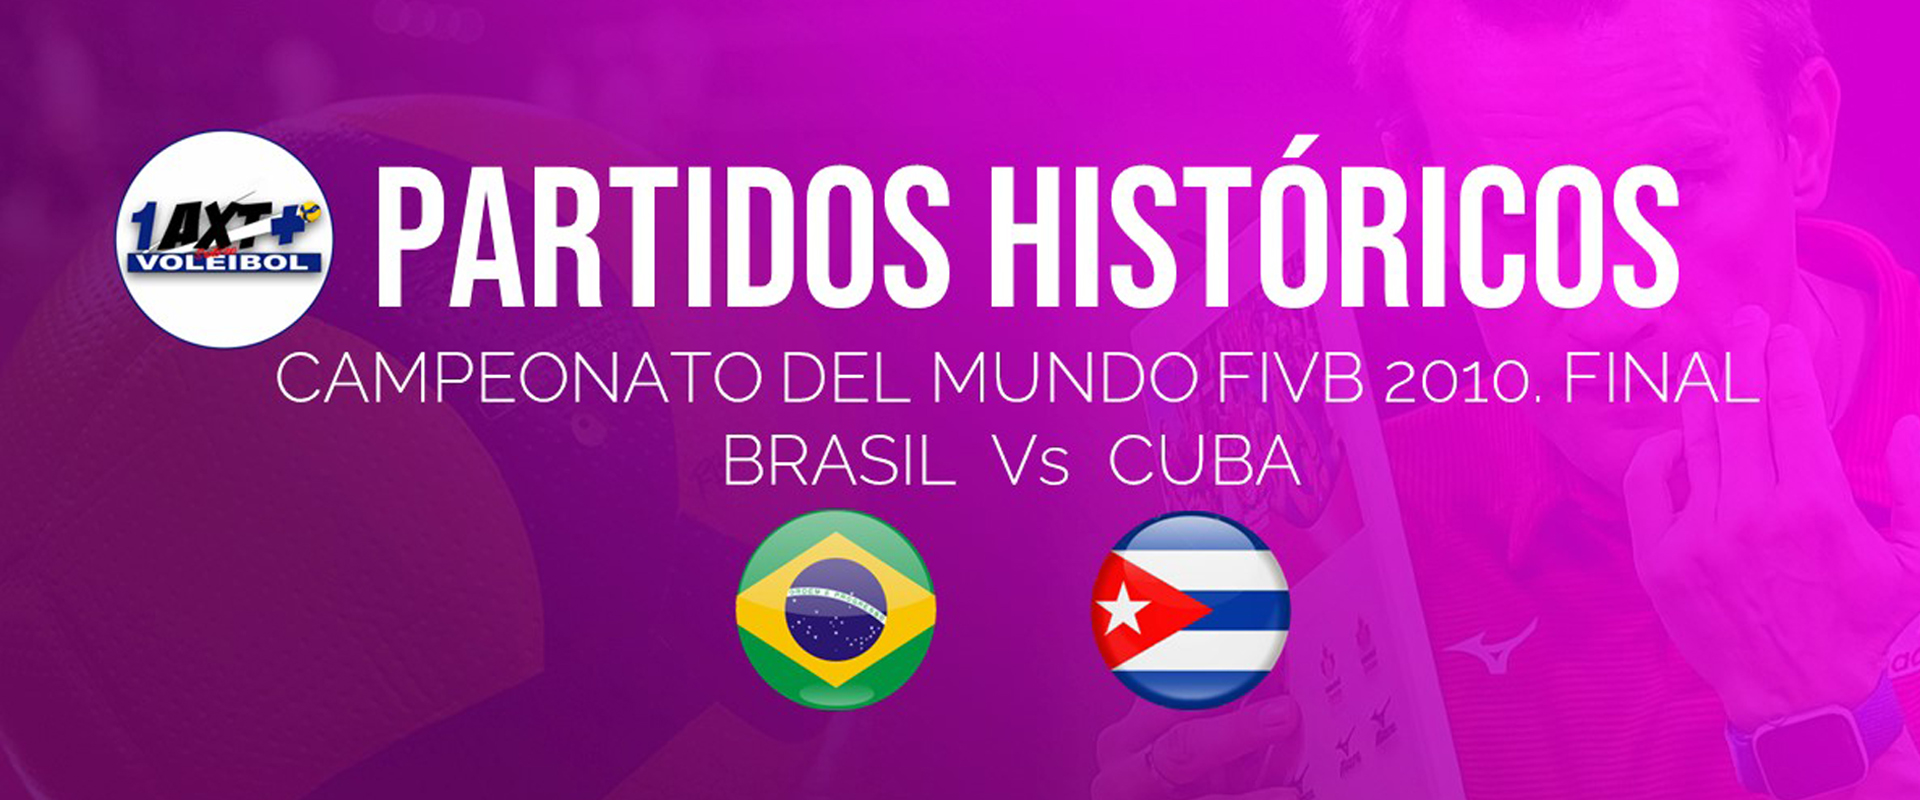 Campeonato del Mundo FIVB 2010 (M): Final Brasil Vs Cuba